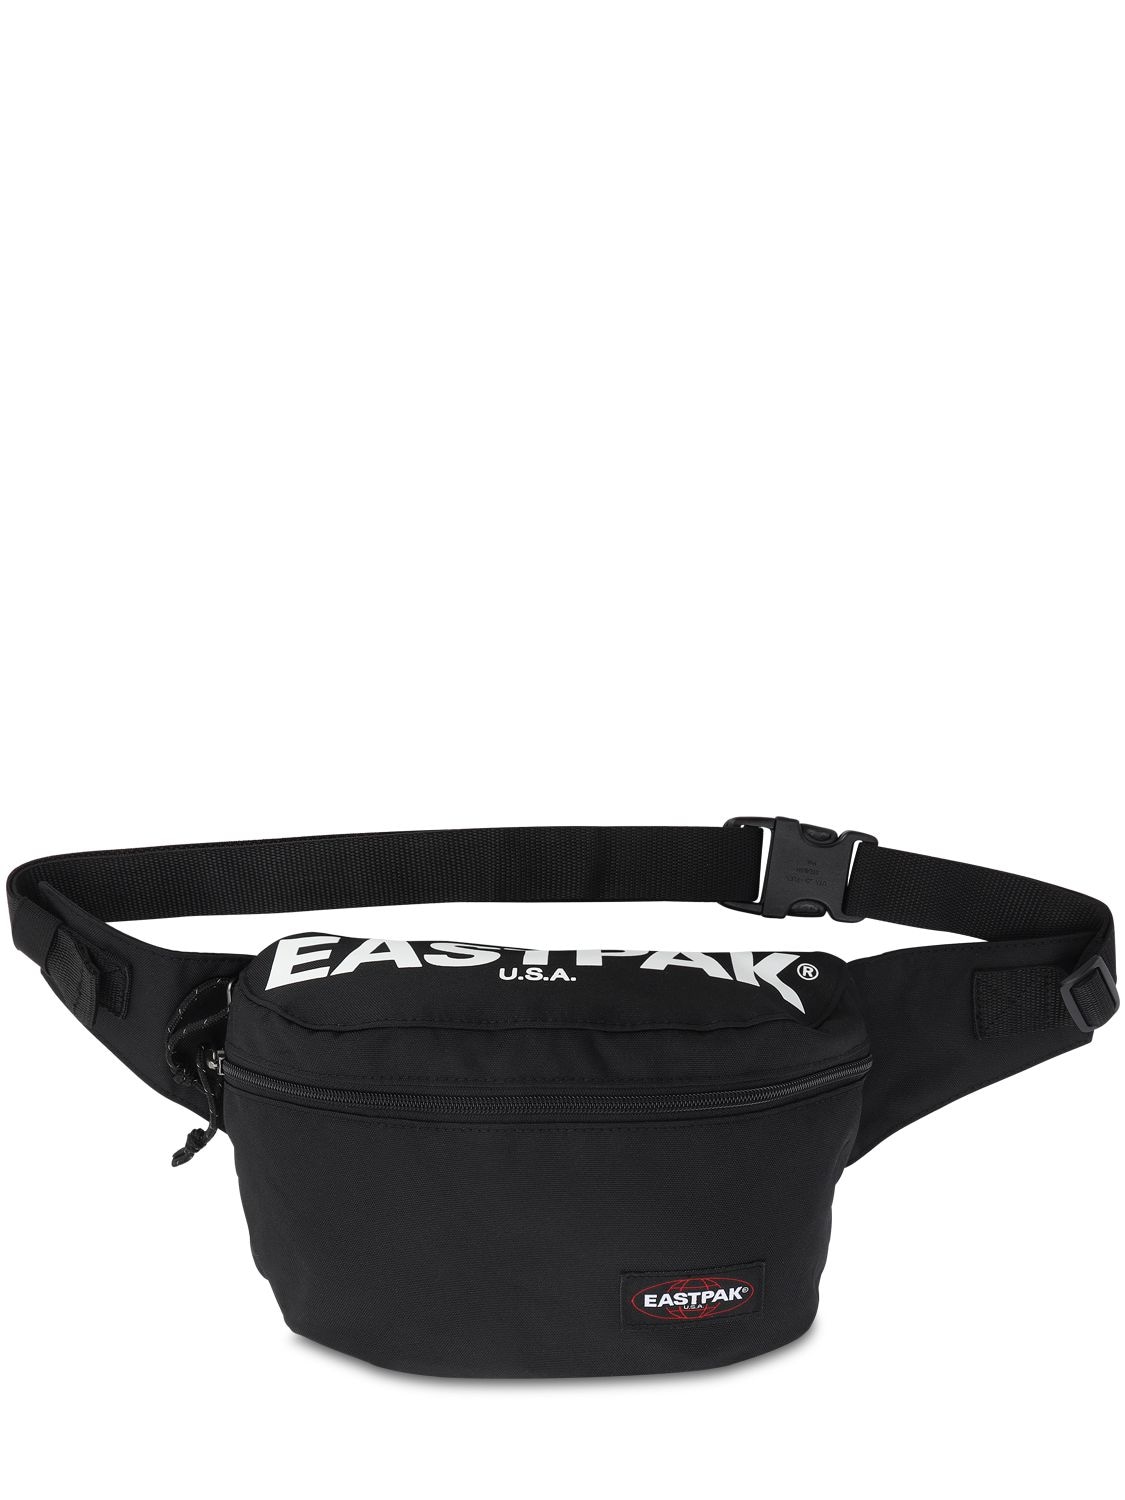 Eastpak Bane Nylon Belt Bag In Black